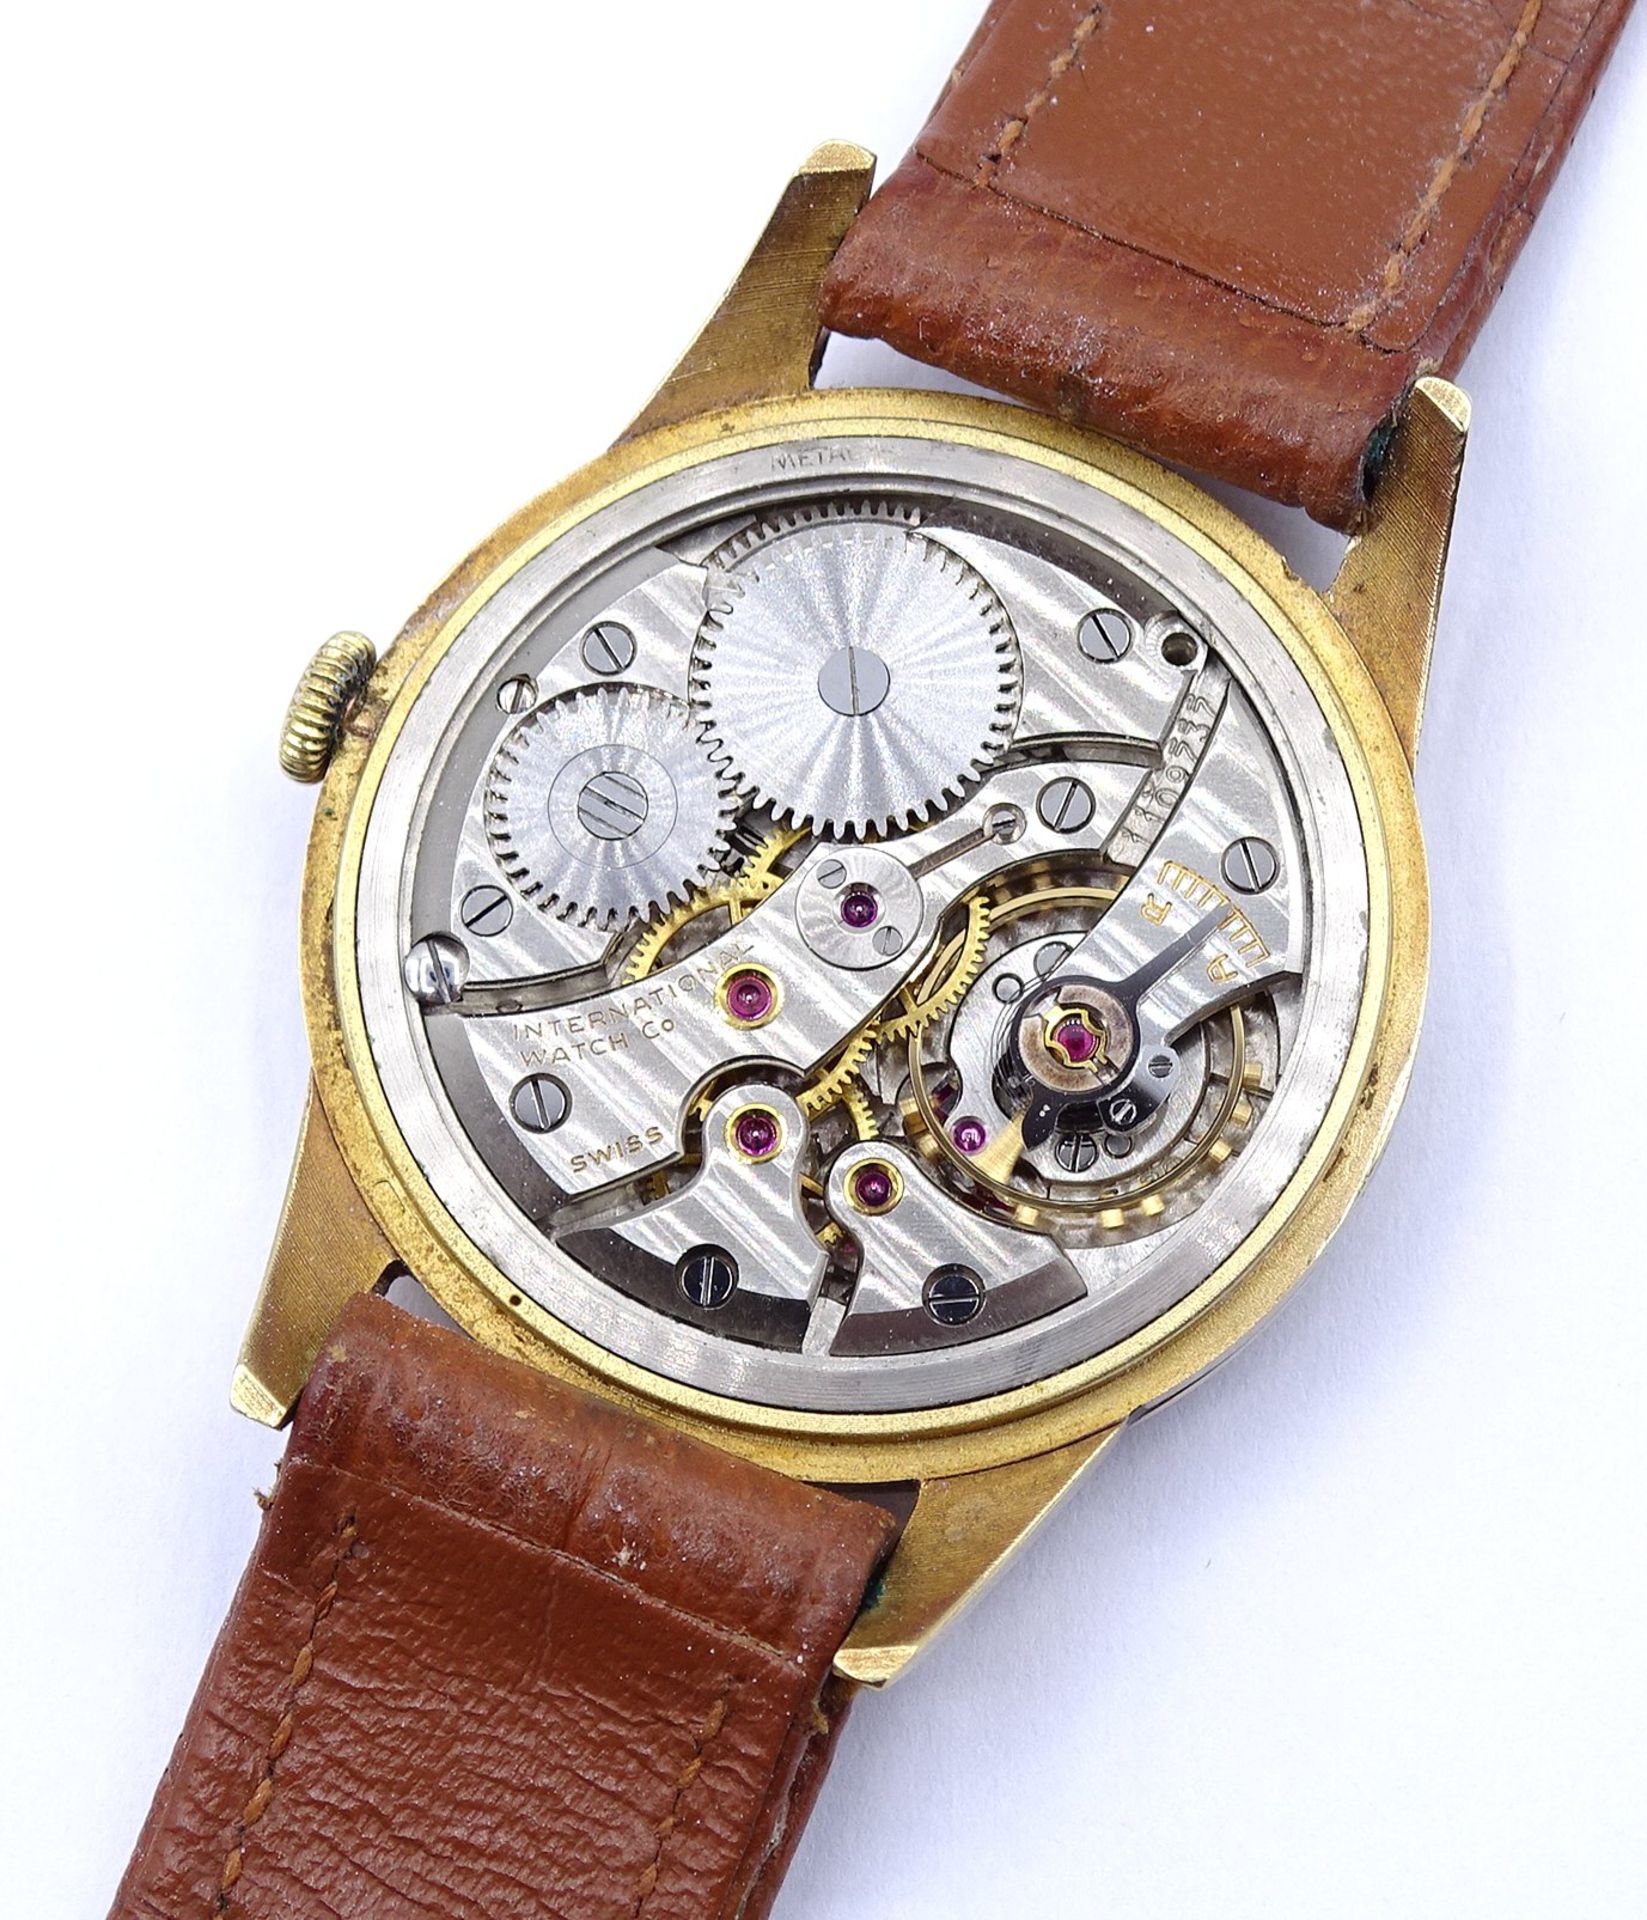 Herren Armbanduhr "IWC" International Watch Co, Schaffhausen, Cal. 89, Gold 750/000, mechanisch, We - Bild 7 aus 11